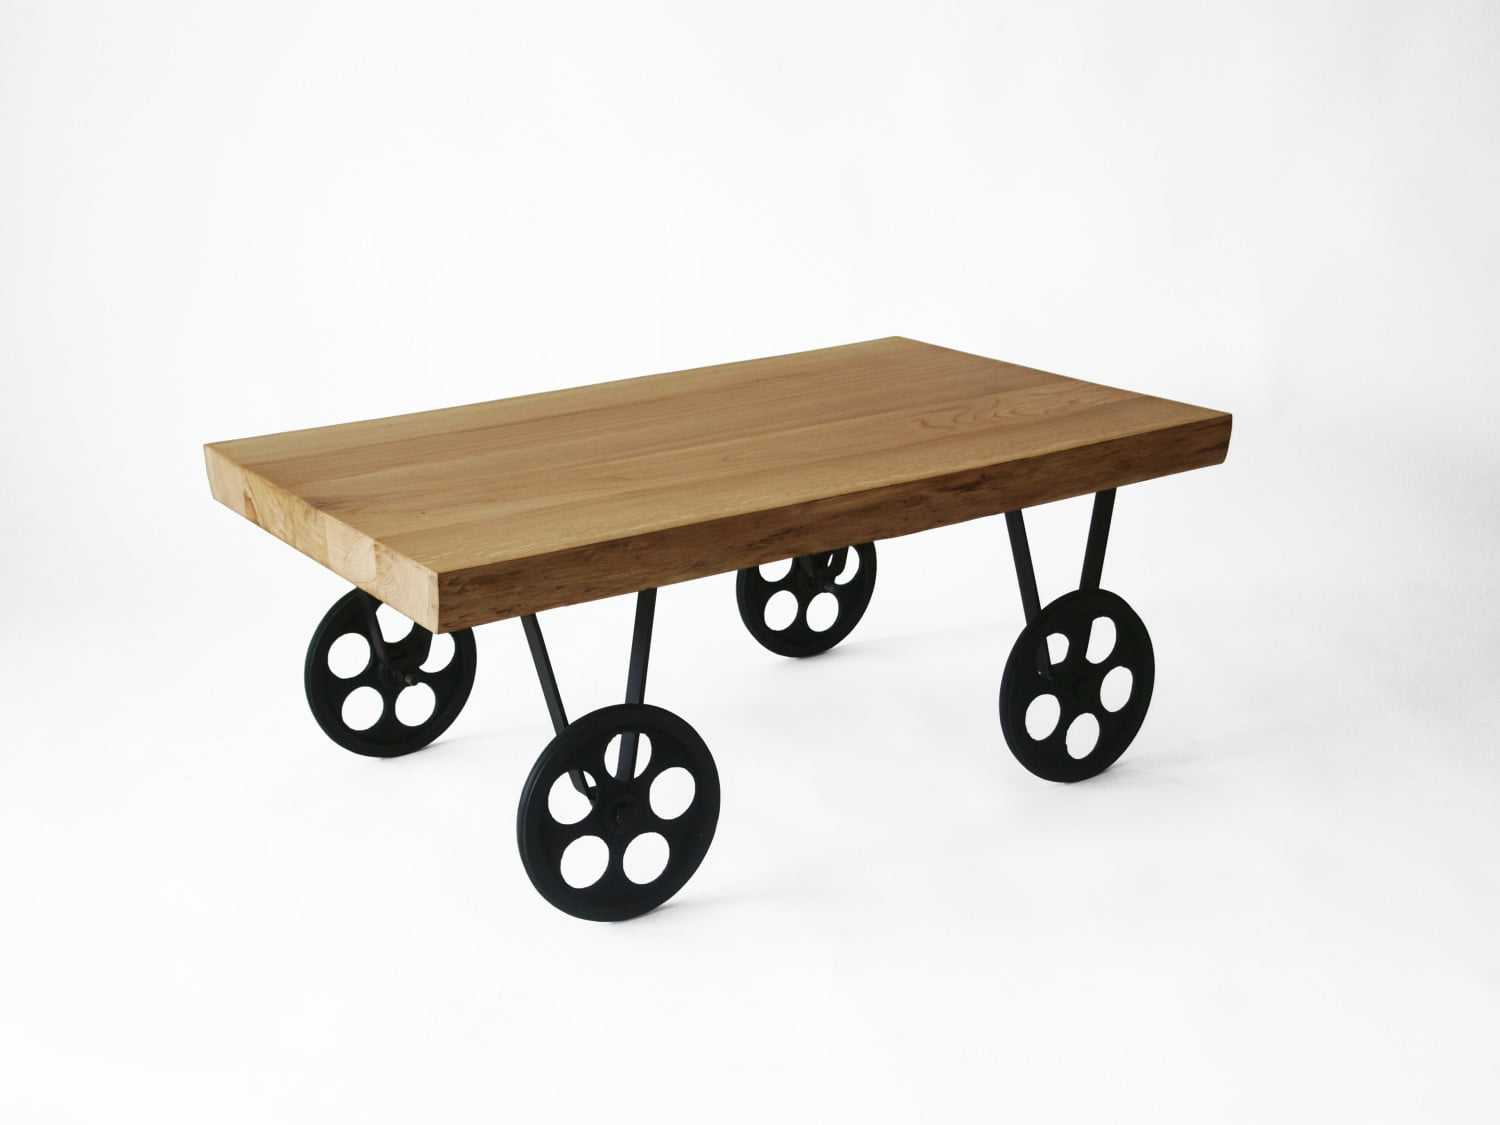 TOLIK 01 oak coffee table on black metal wheels in an industrial style